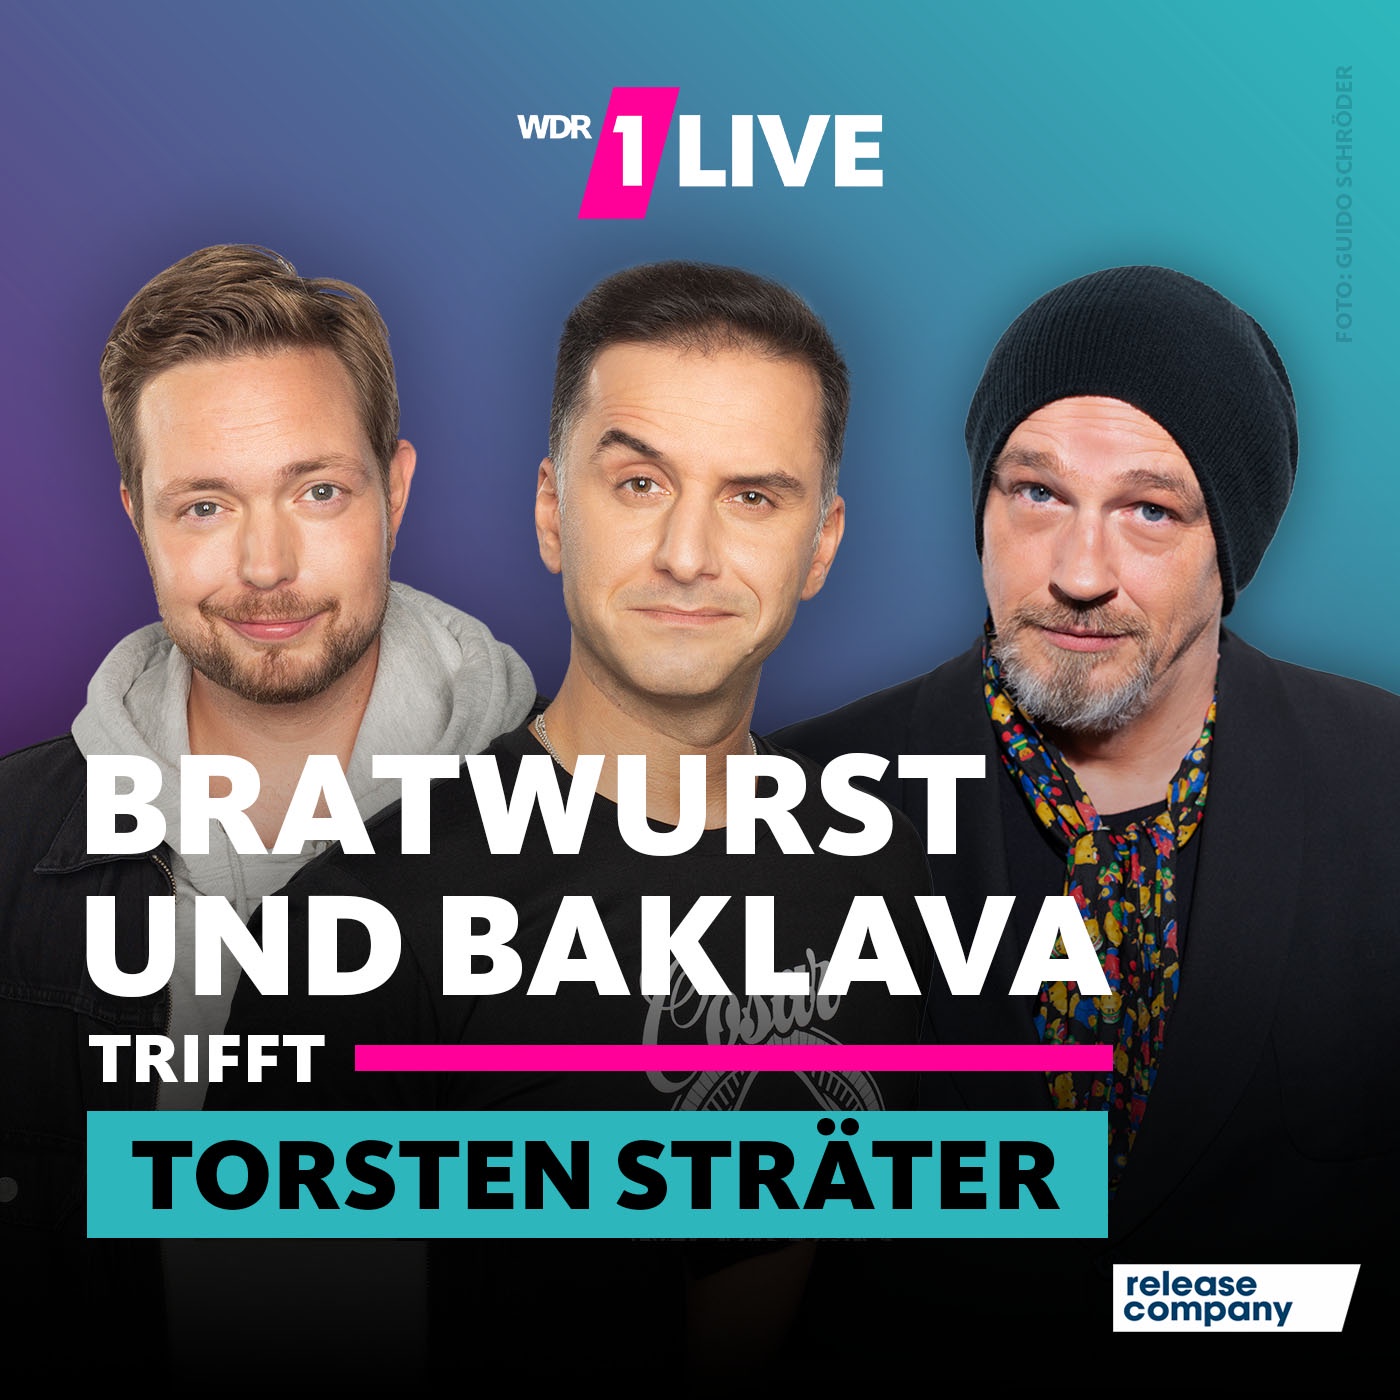 Torsten Sträter - Bratwurst und Baklava trifft #150